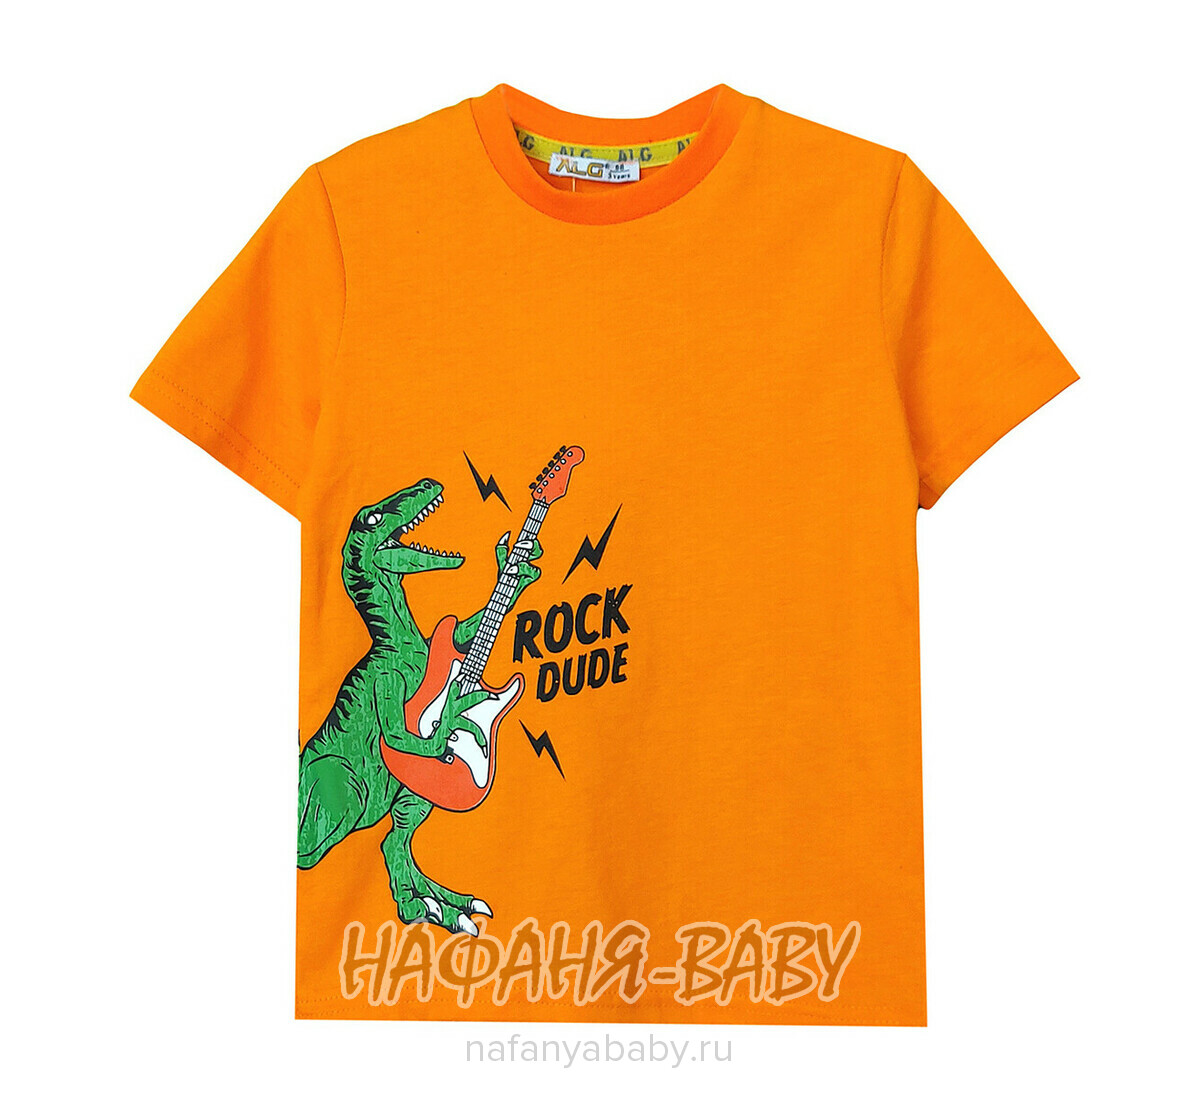 Детская футболка ALG, купить в интернет магазине Нафаня. арт: 222614.